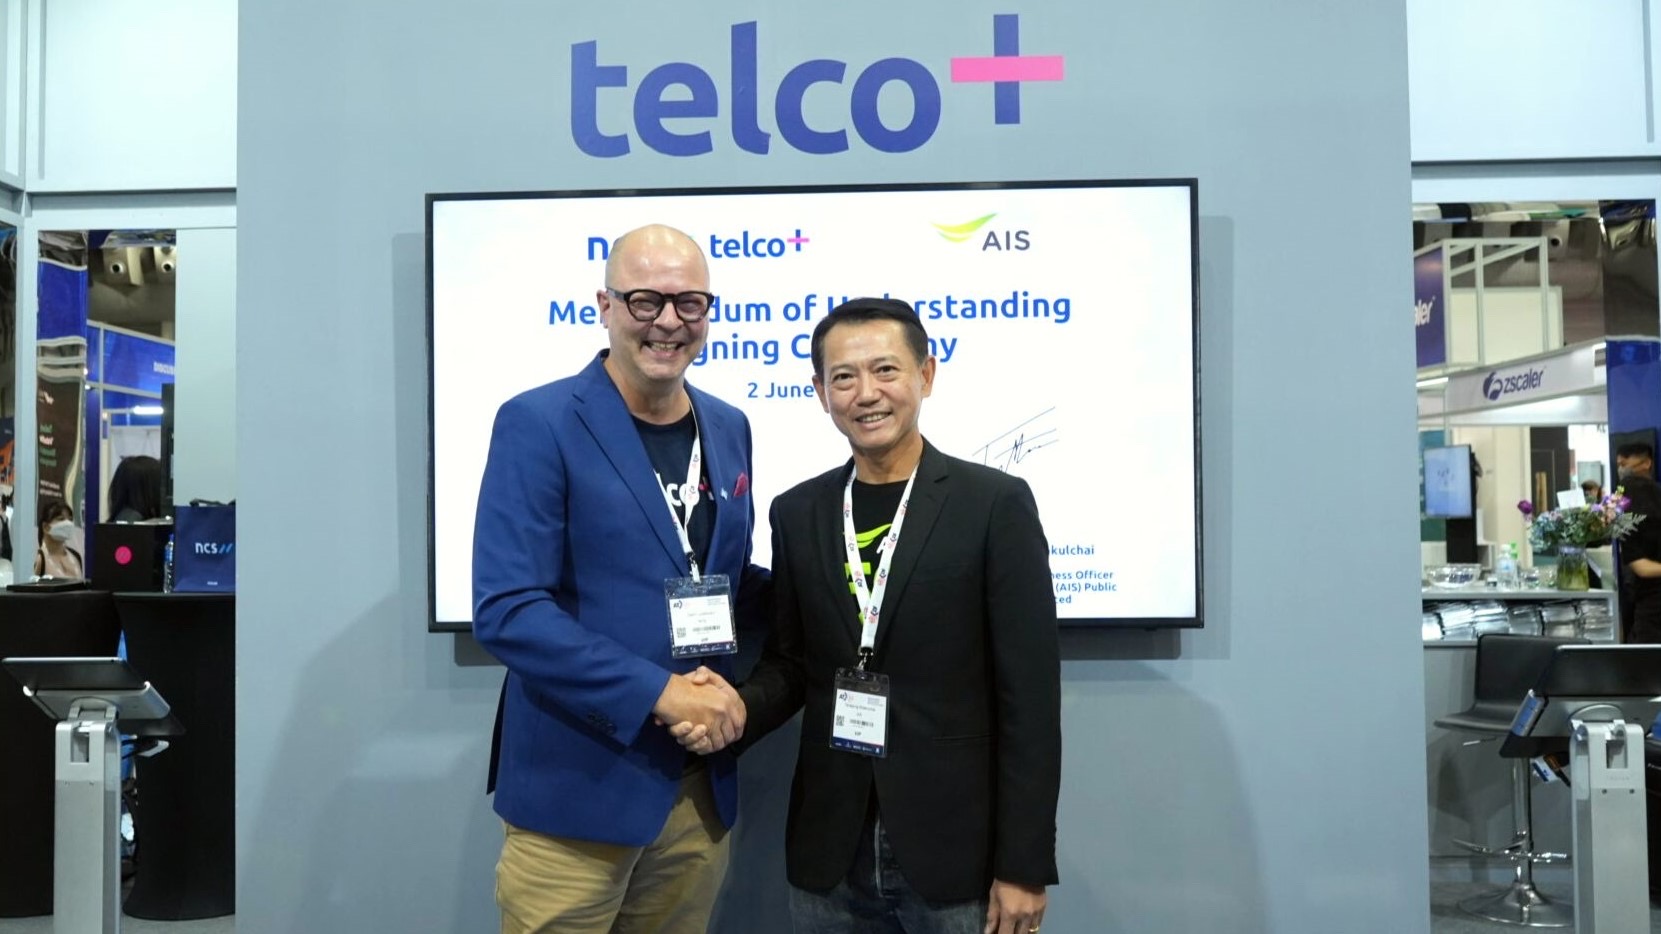 NCS Telco+ และ AIS ผนึกกำลังร่วมขับเคลื่อนการเปลี่ยนแปลงของผู้ประกอบการไทยด้วยศักยภาพจากดิจิทัล เทคโนโลยี